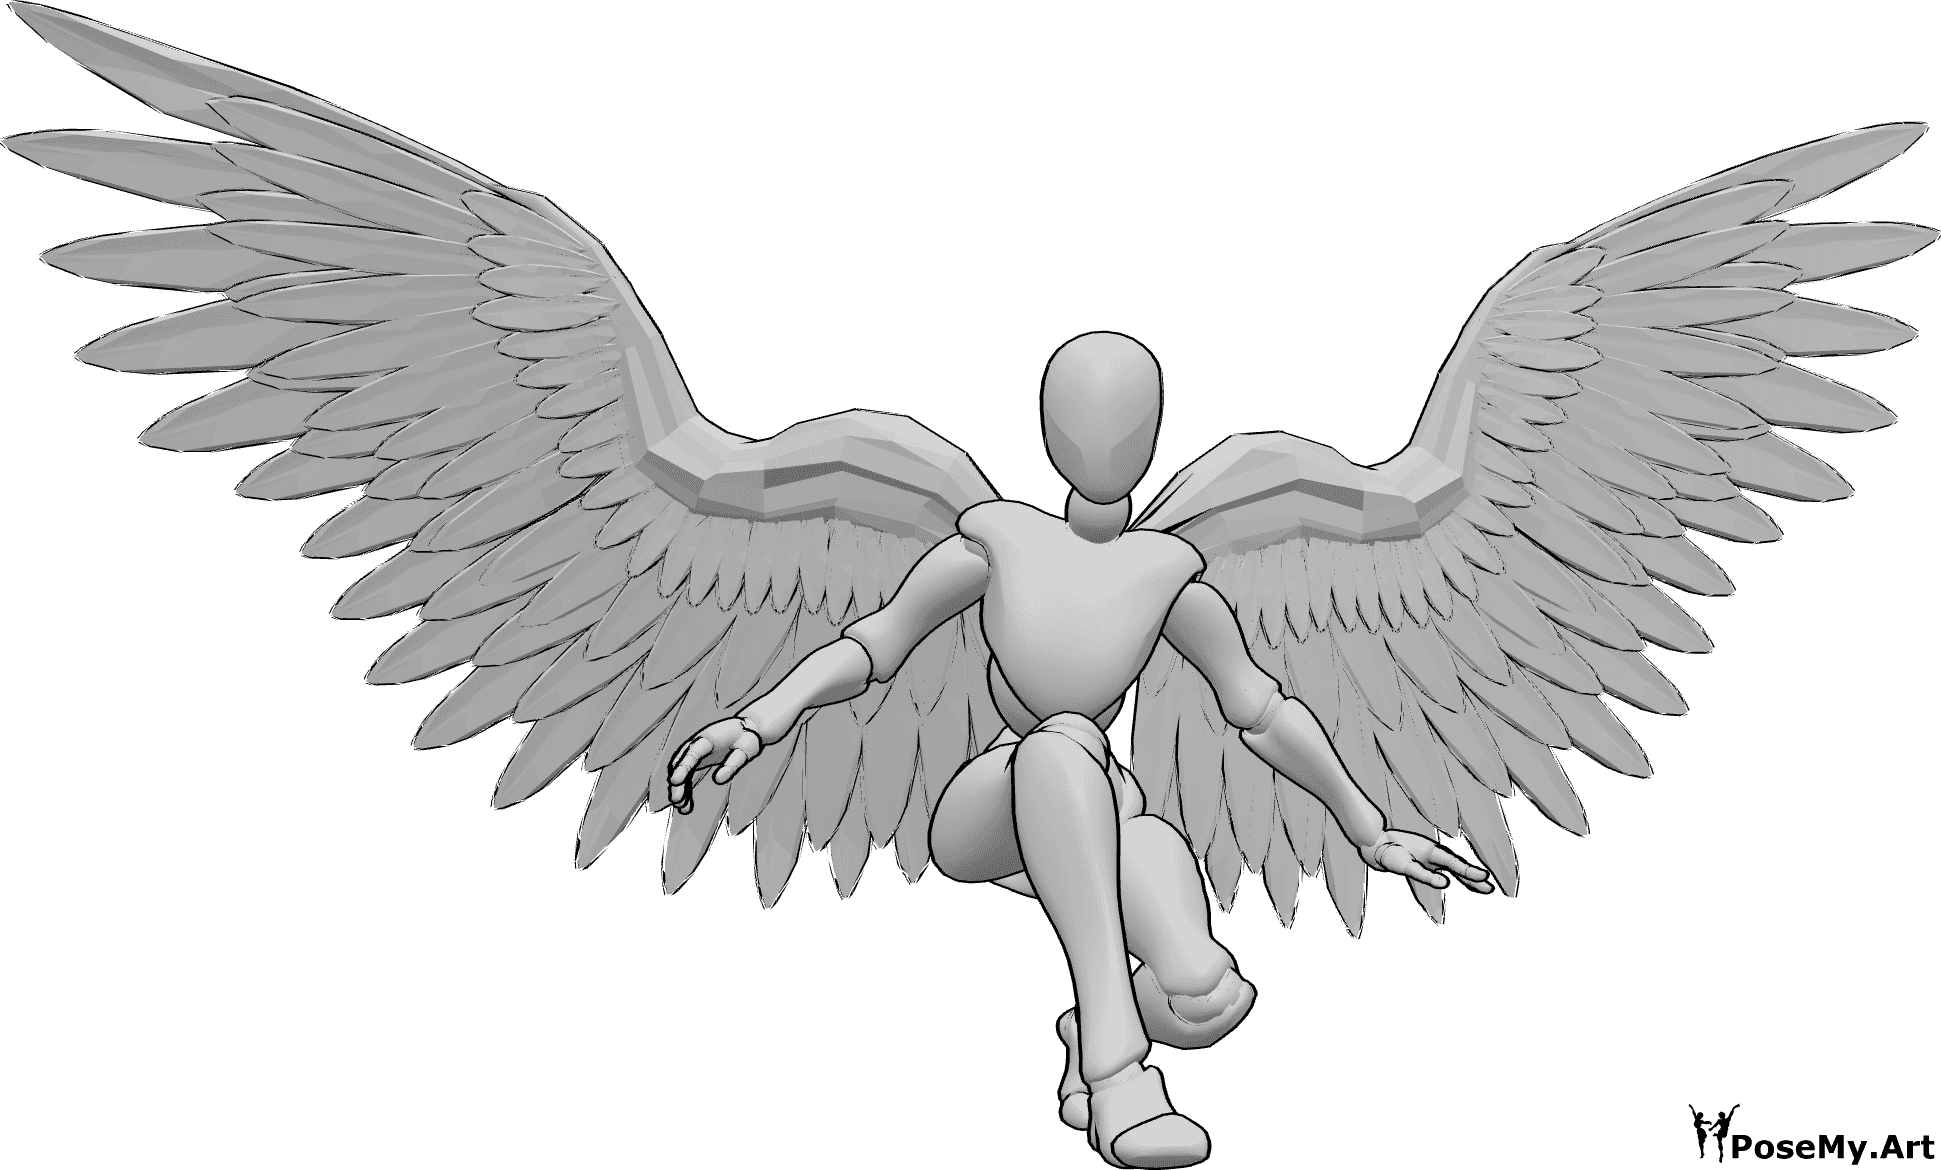 Référence des poses- Pose d'atterrissage des ailes d'ange - Femme aux ailes d'ange atterrissant en équilibre sur ses mains et regardant vers l'avant.